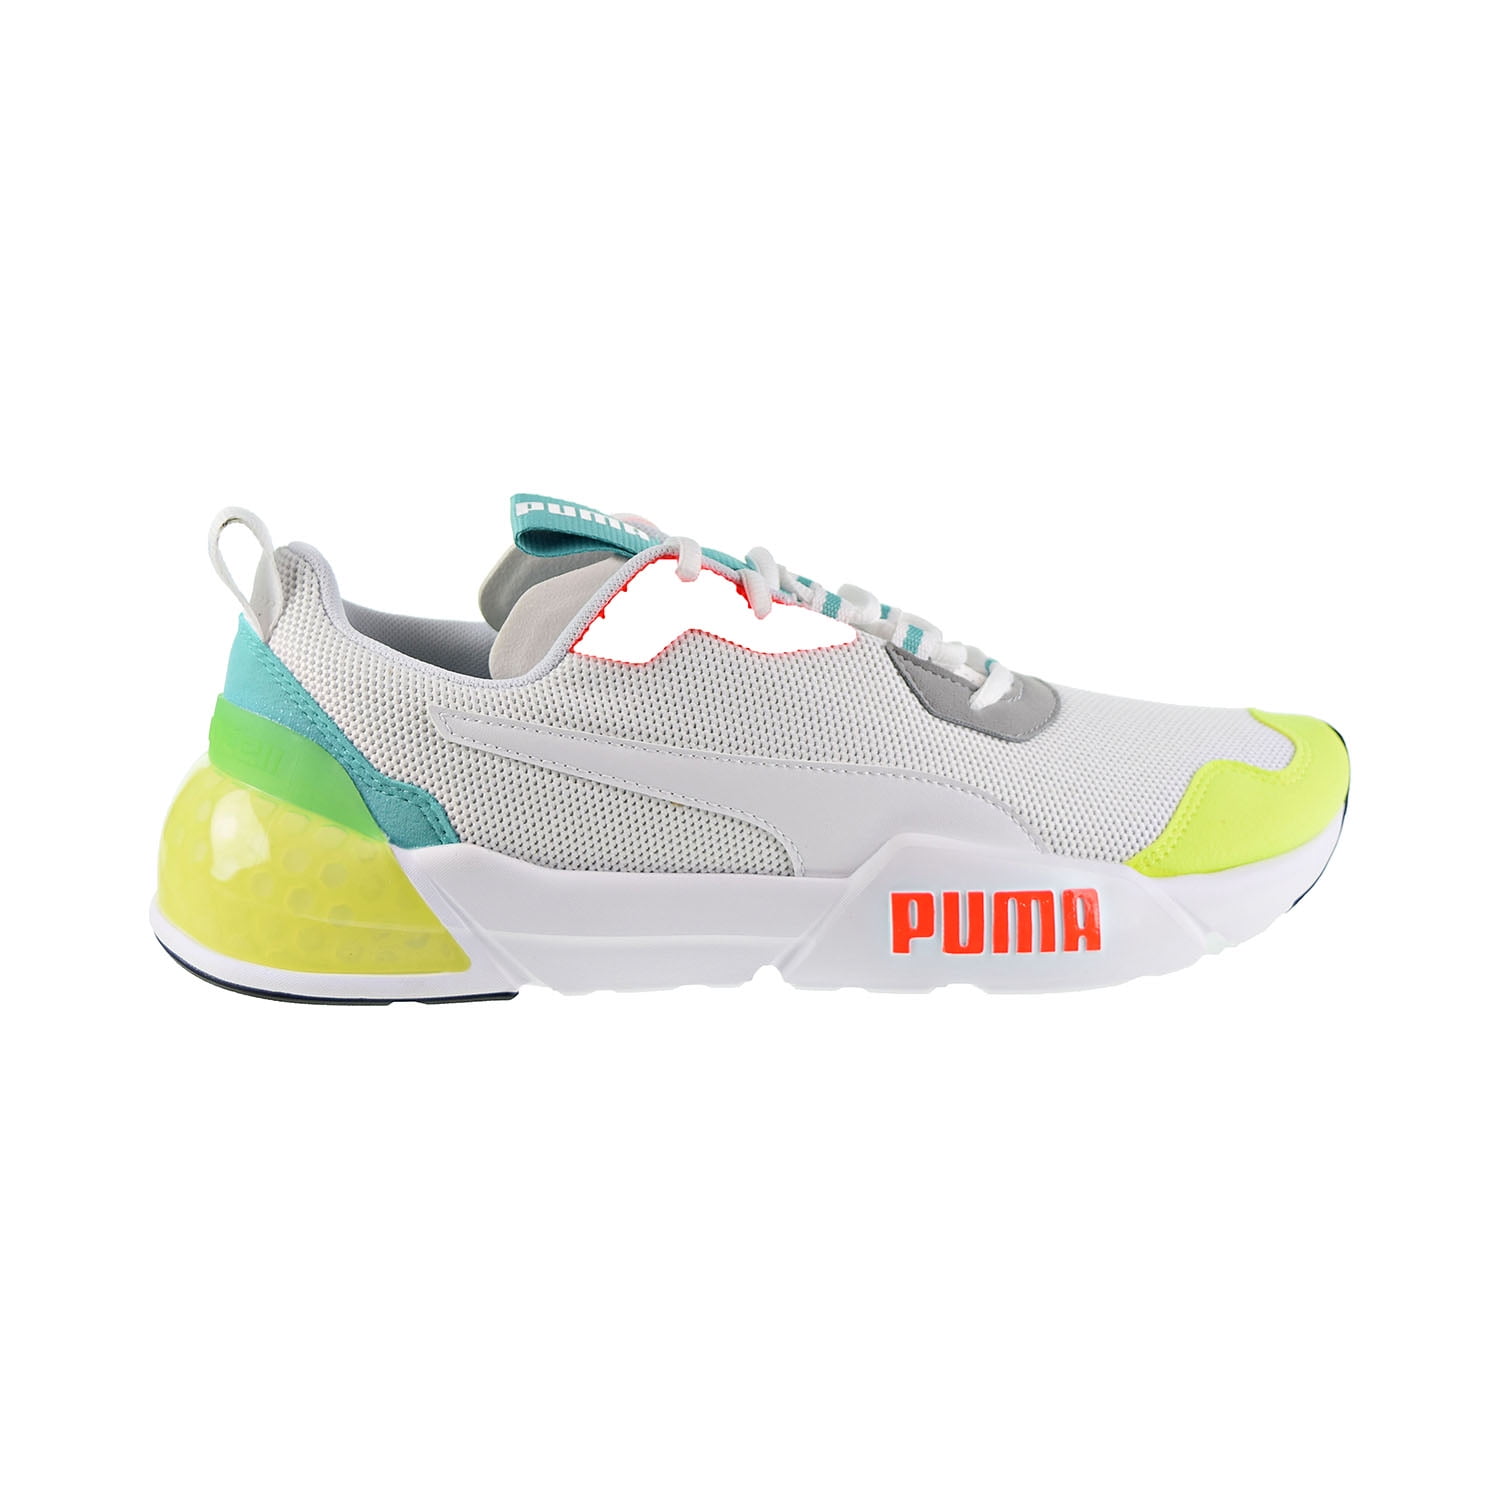 puma cell mens shoes